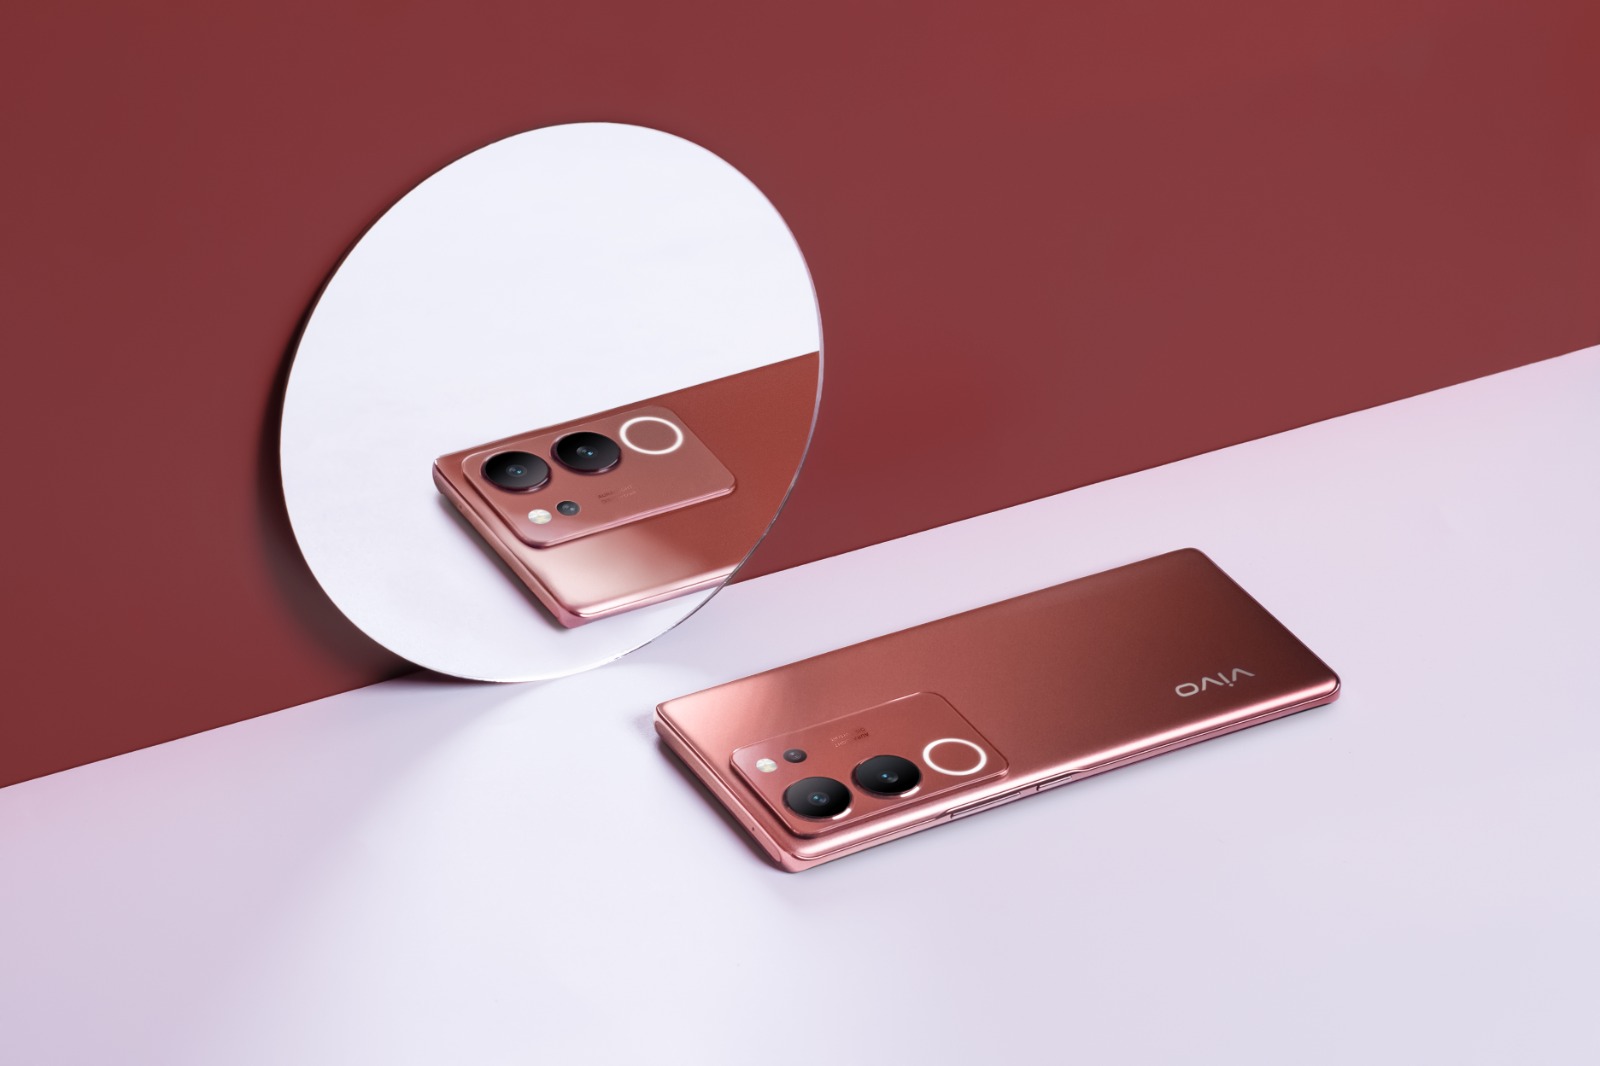 Intip Fitur Canggih Smartphone Generasi Teranyar vivo V29, Hadir dengan Warna Baru Velvet Red